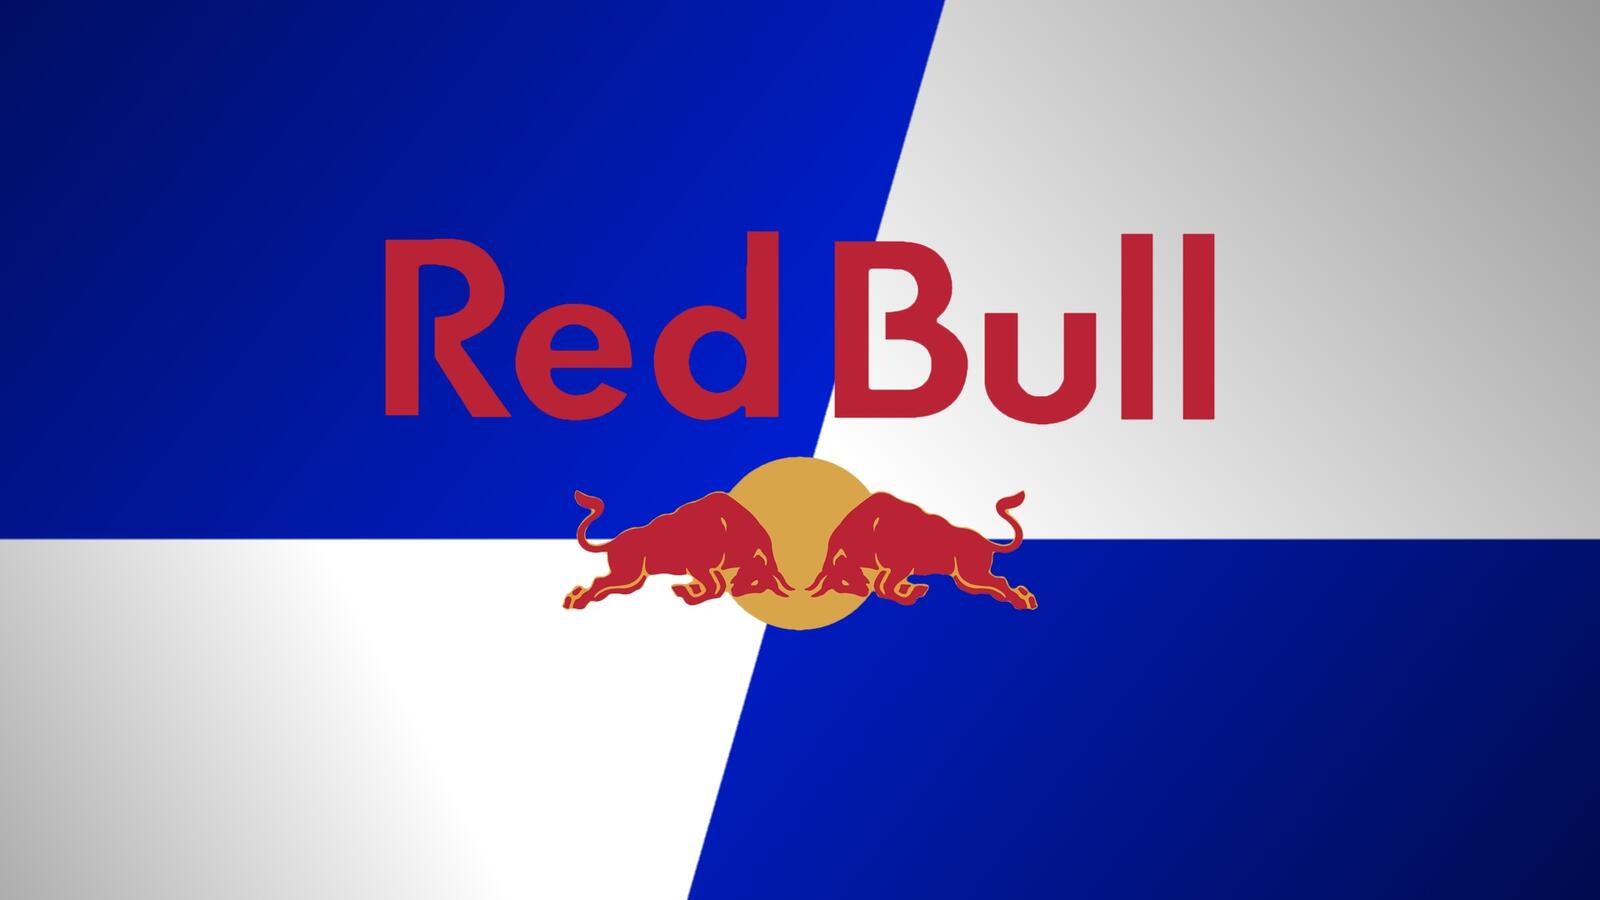 Wallpapers redbull brand logo on the desktop